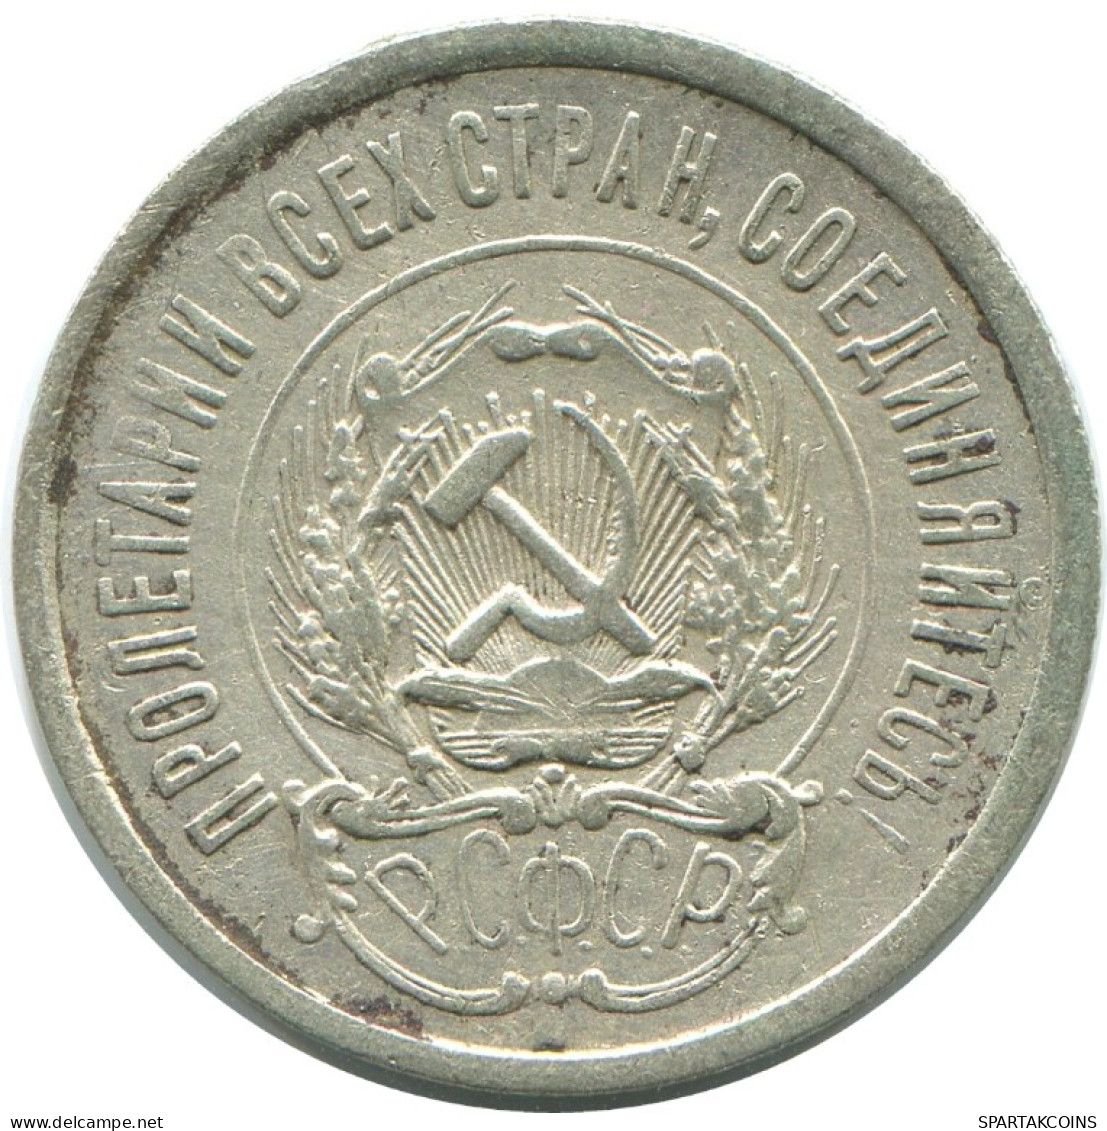 20 KOPEKS 1923 RUSSLAND RUSSIA RSFSR SILBER Münze HIGH GRADE #AF555.4.D.A - Russia